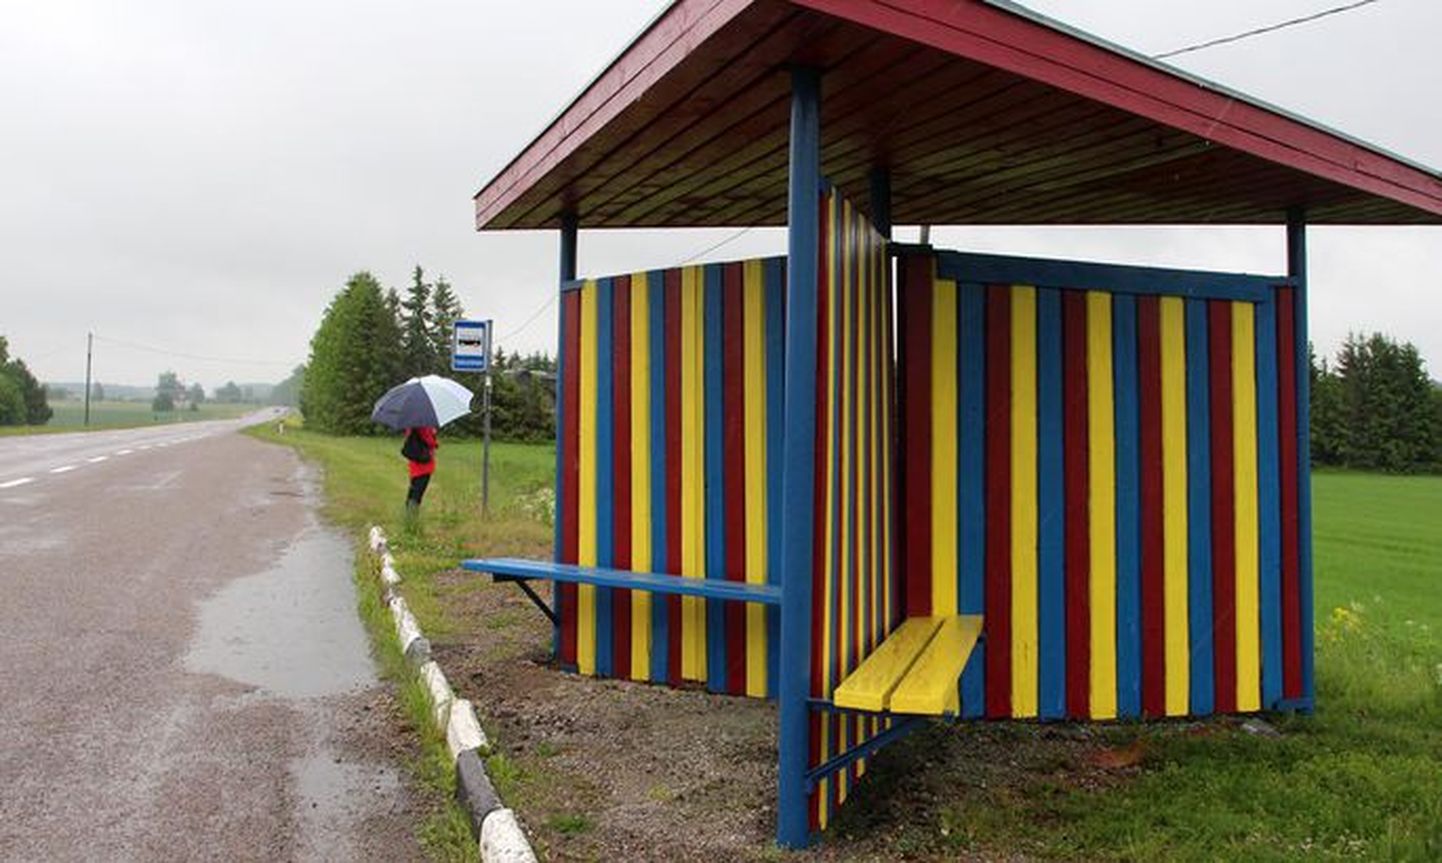 Müüsleri ja Köisi küla rahvas pintseldas bussiootekojad seelikutriibuliseks 2017. aasta suvel.